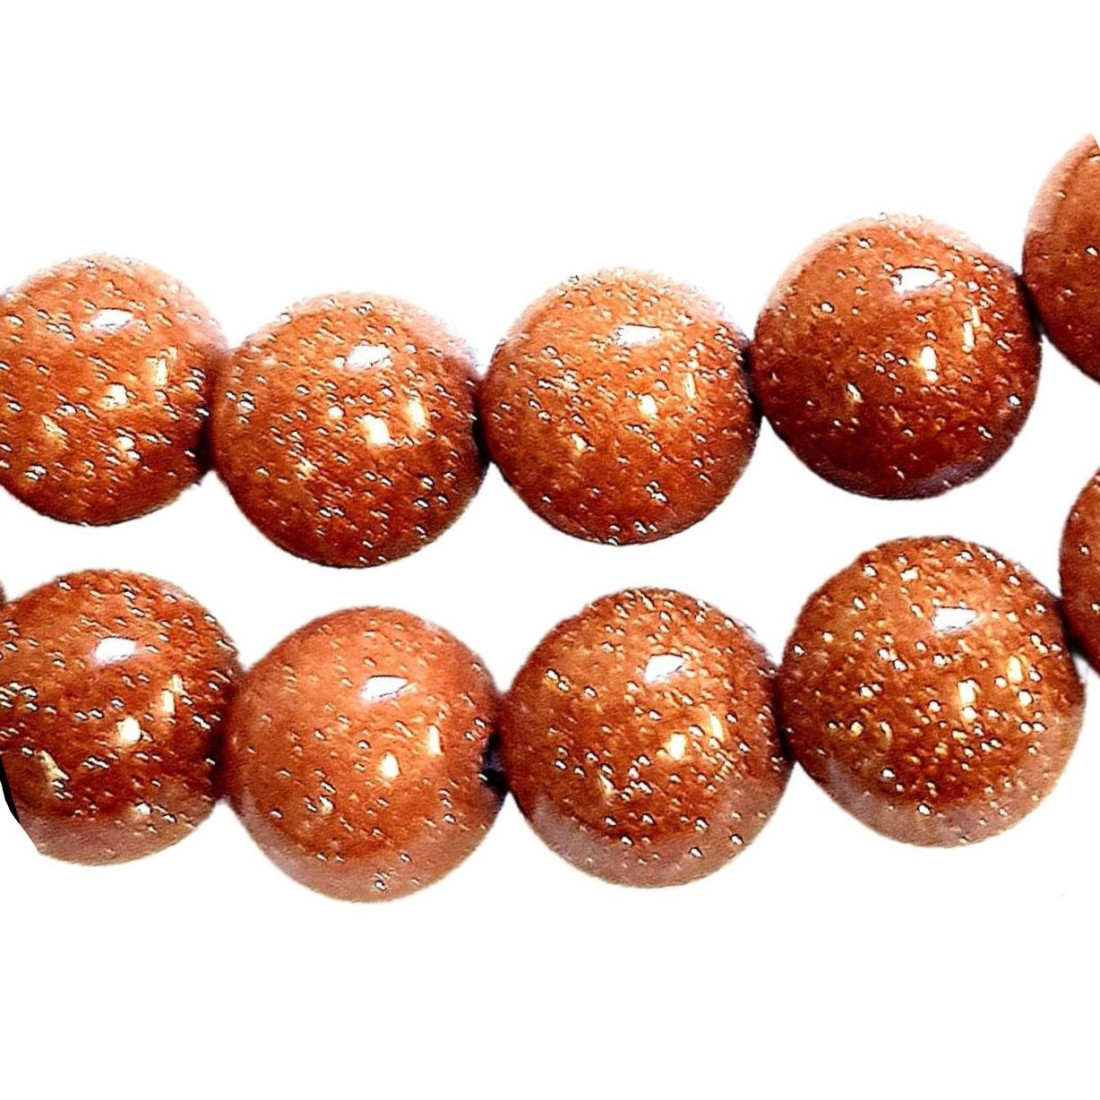 Fil de 64 perles rondes 6mm 6 mm en Pierre soleil rouge pailleté